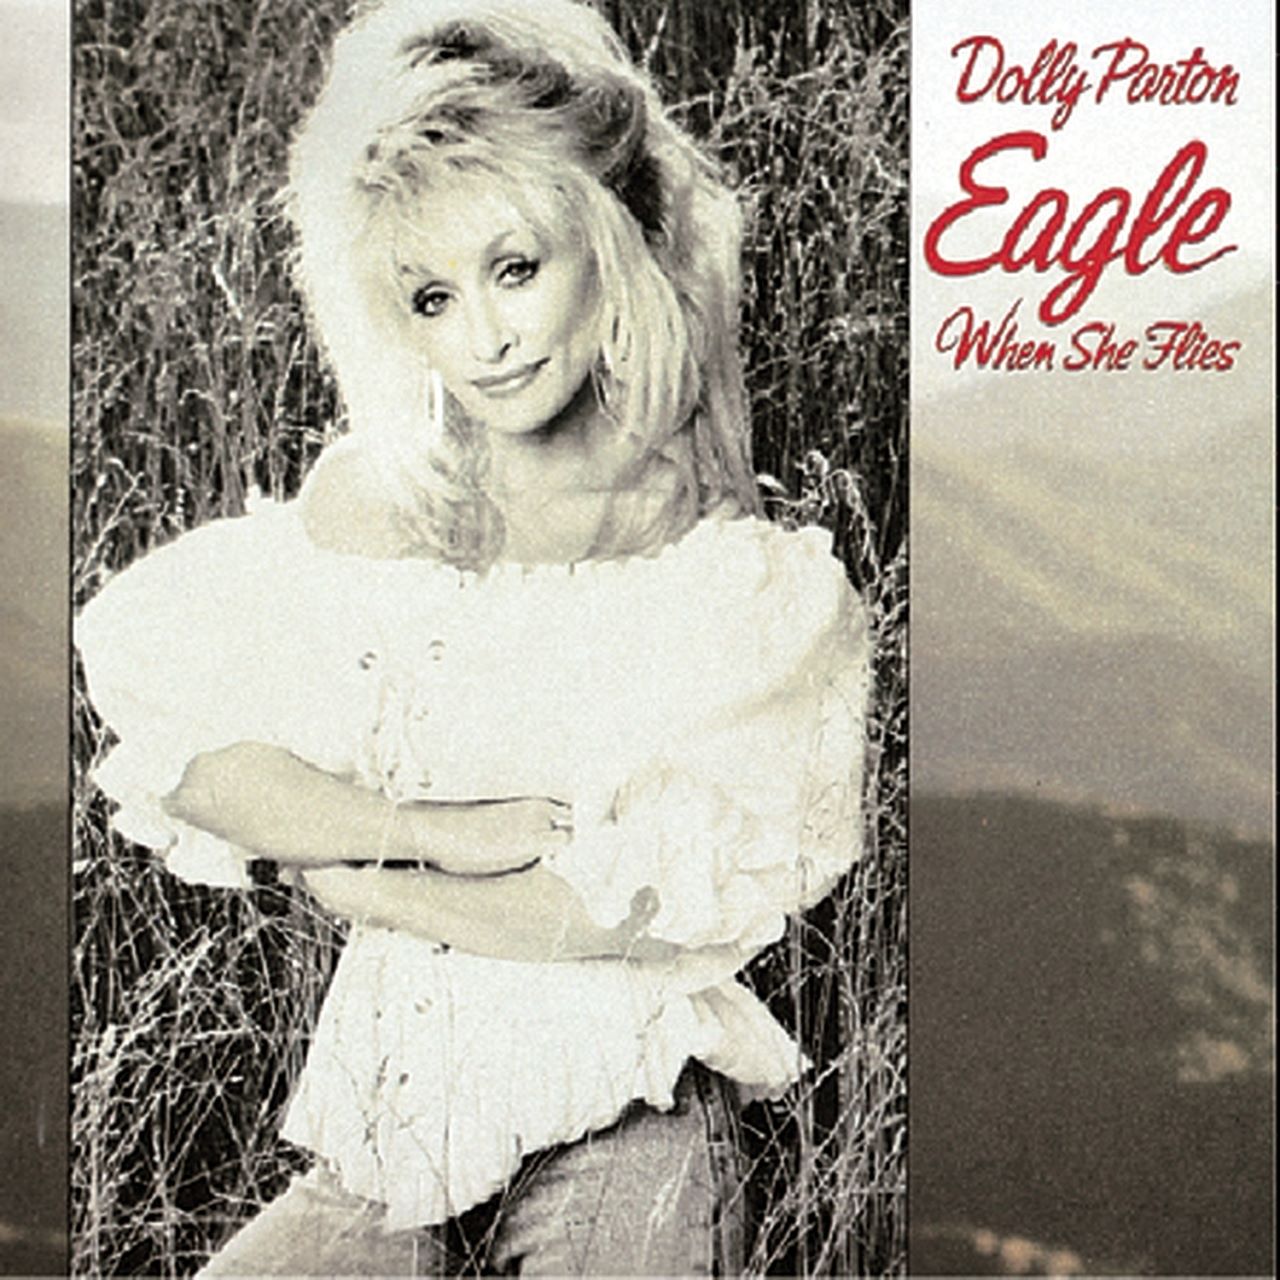 Dolly Parton – Eagle When She Flies cover album